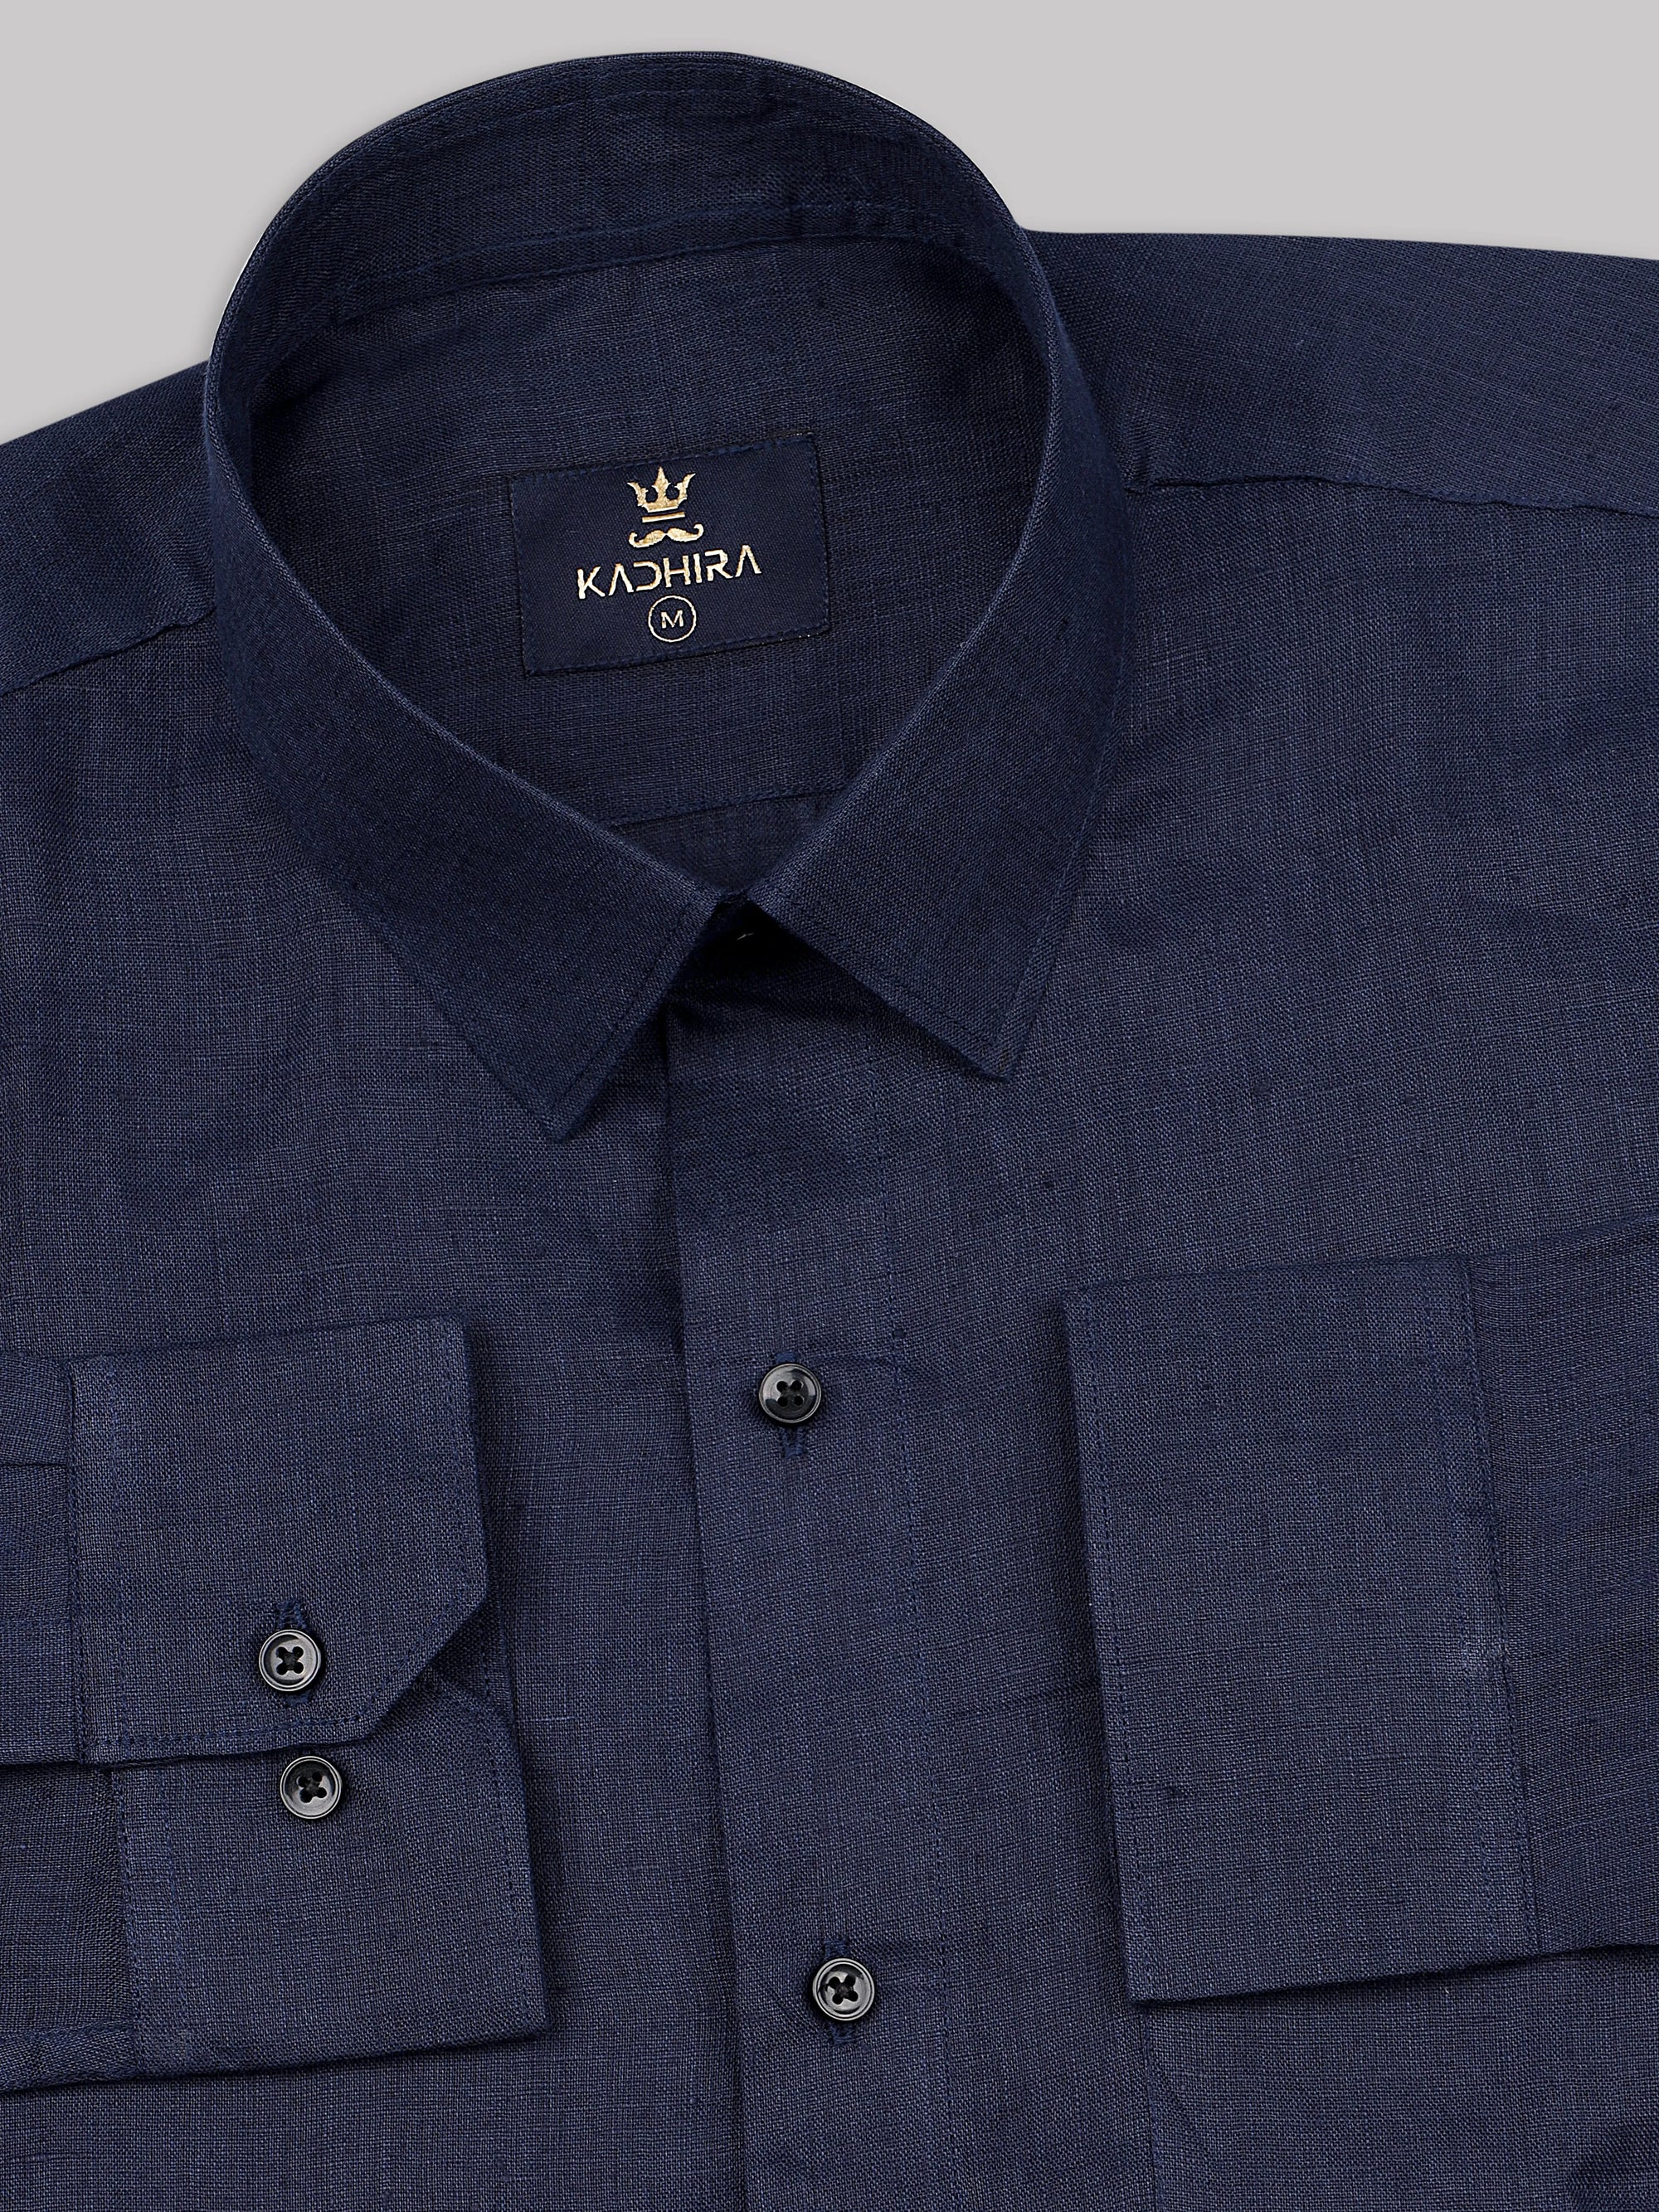 Navy Blue Super Soft Linen Shirt-[ON SALE]